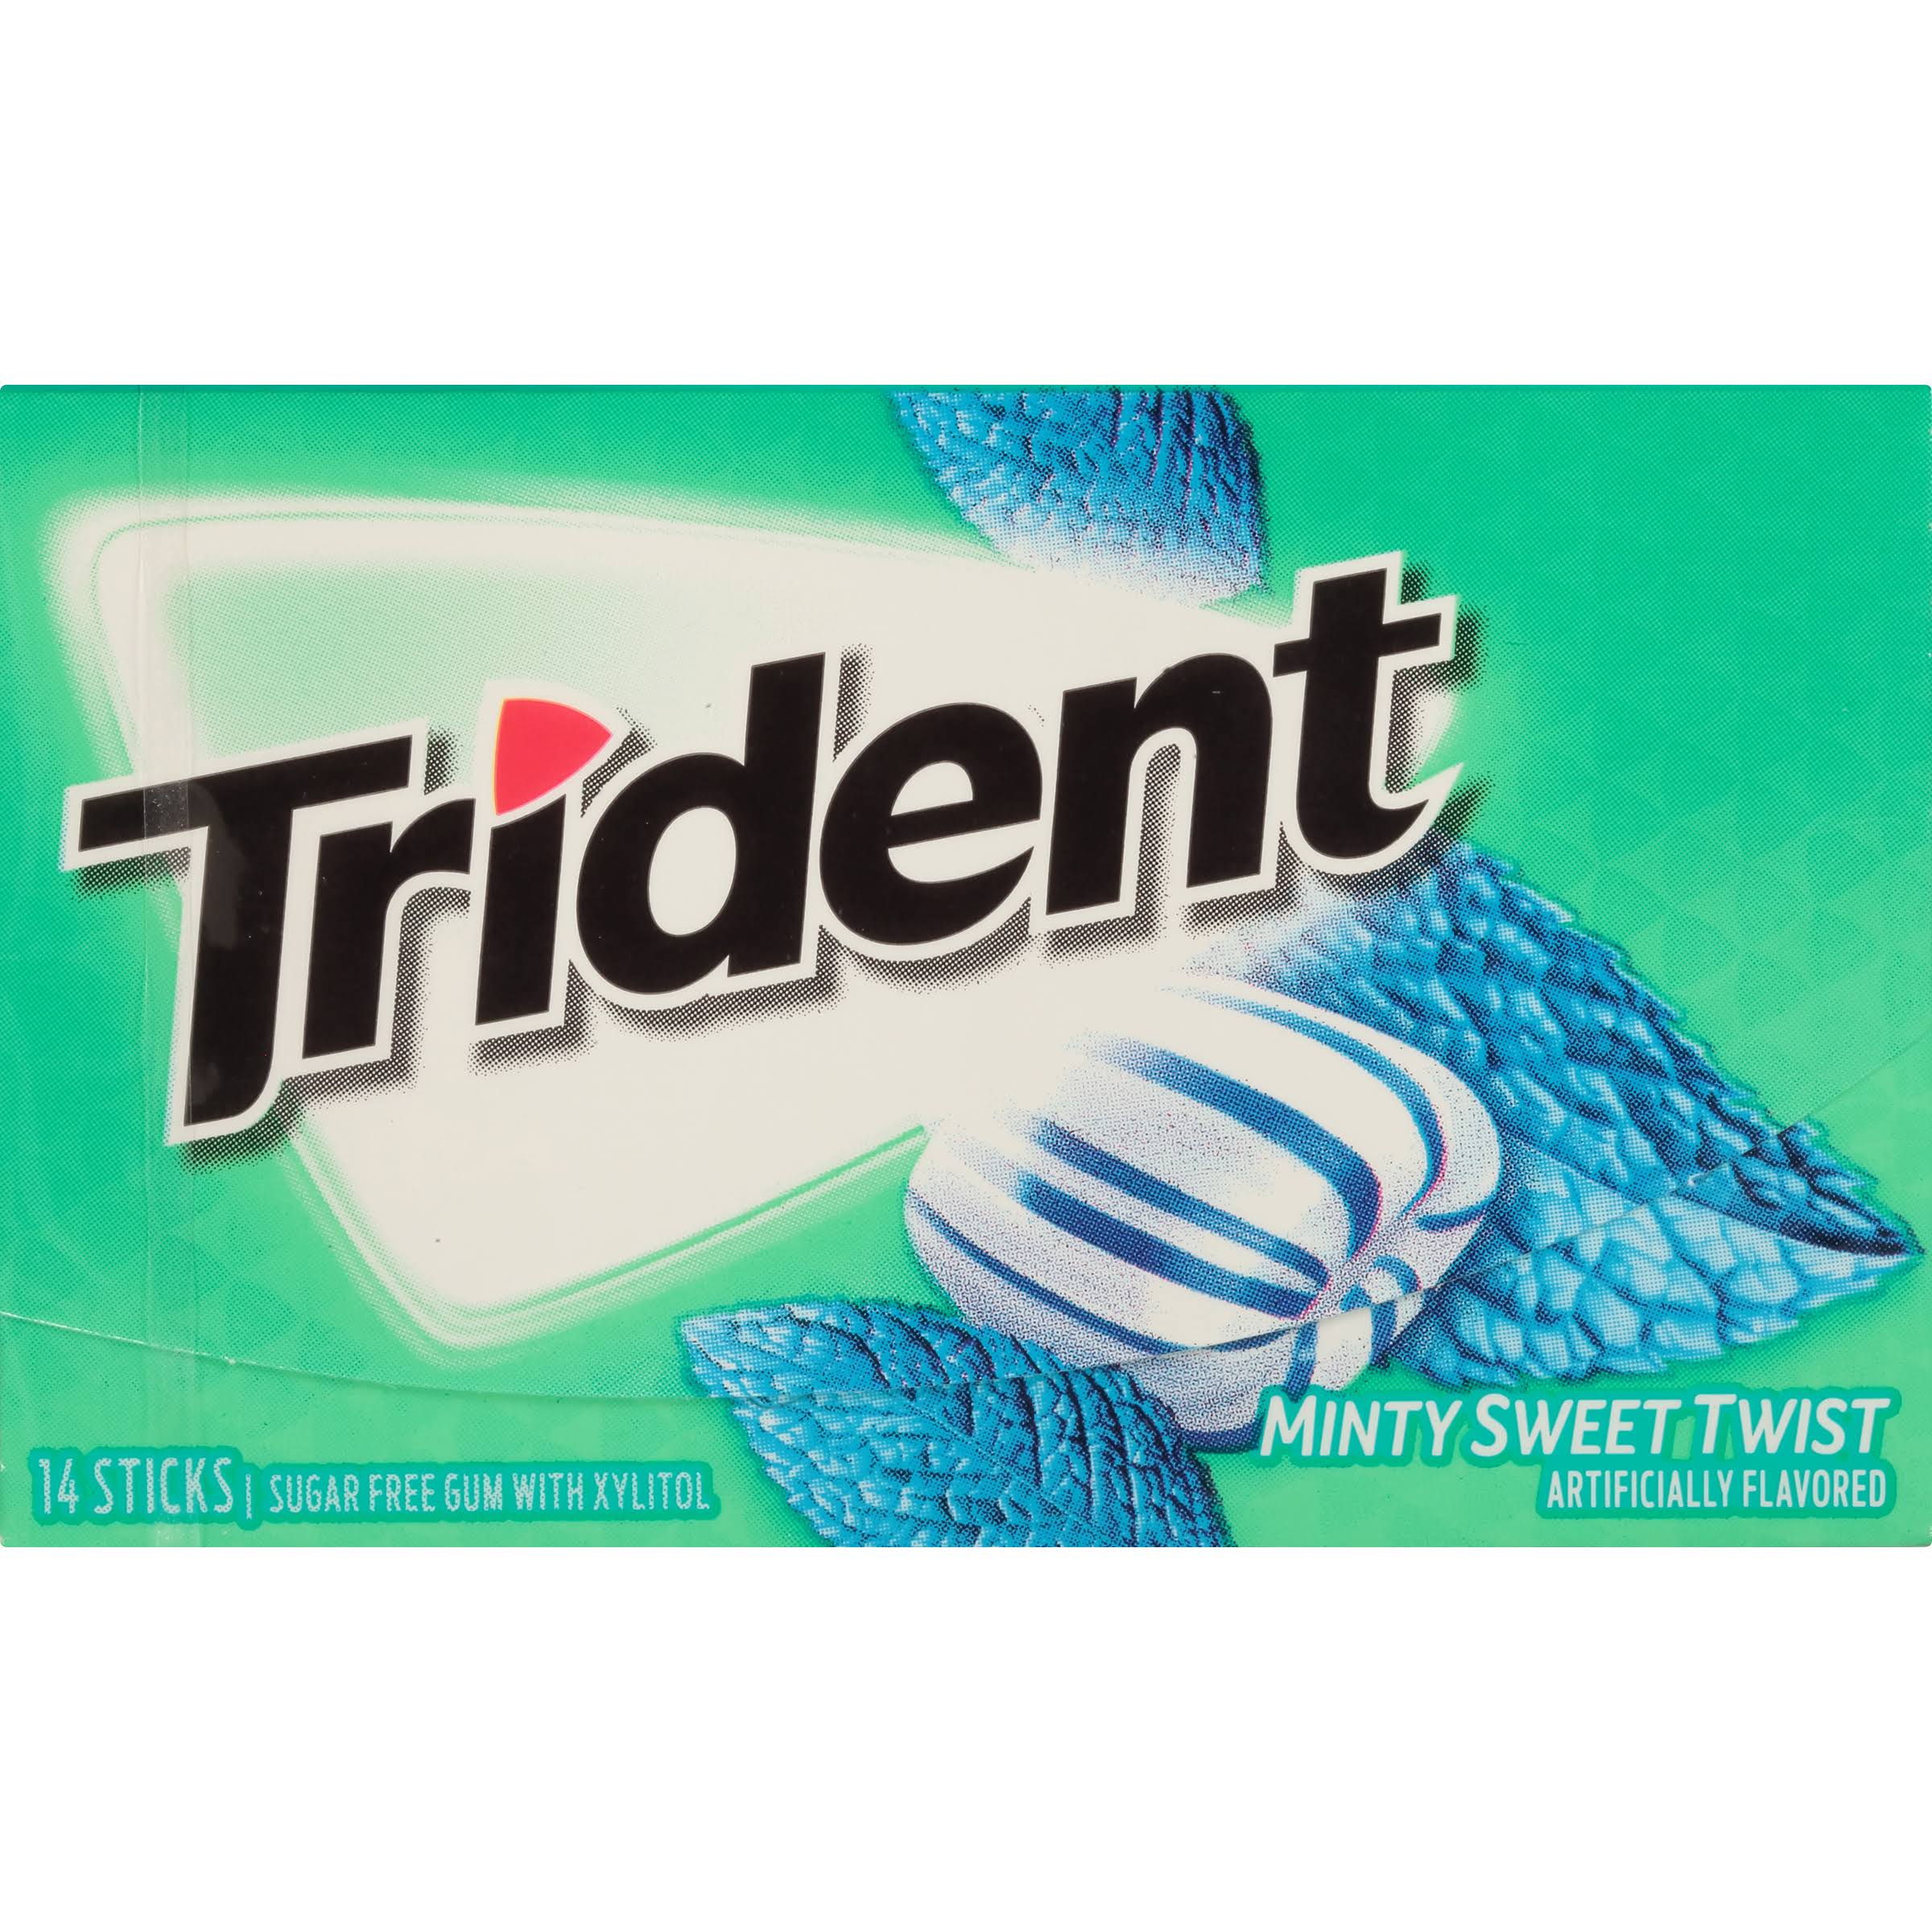 Trident Gum with Xylitol, Sugar Free, Minty Sweet Twist - 14 sticks